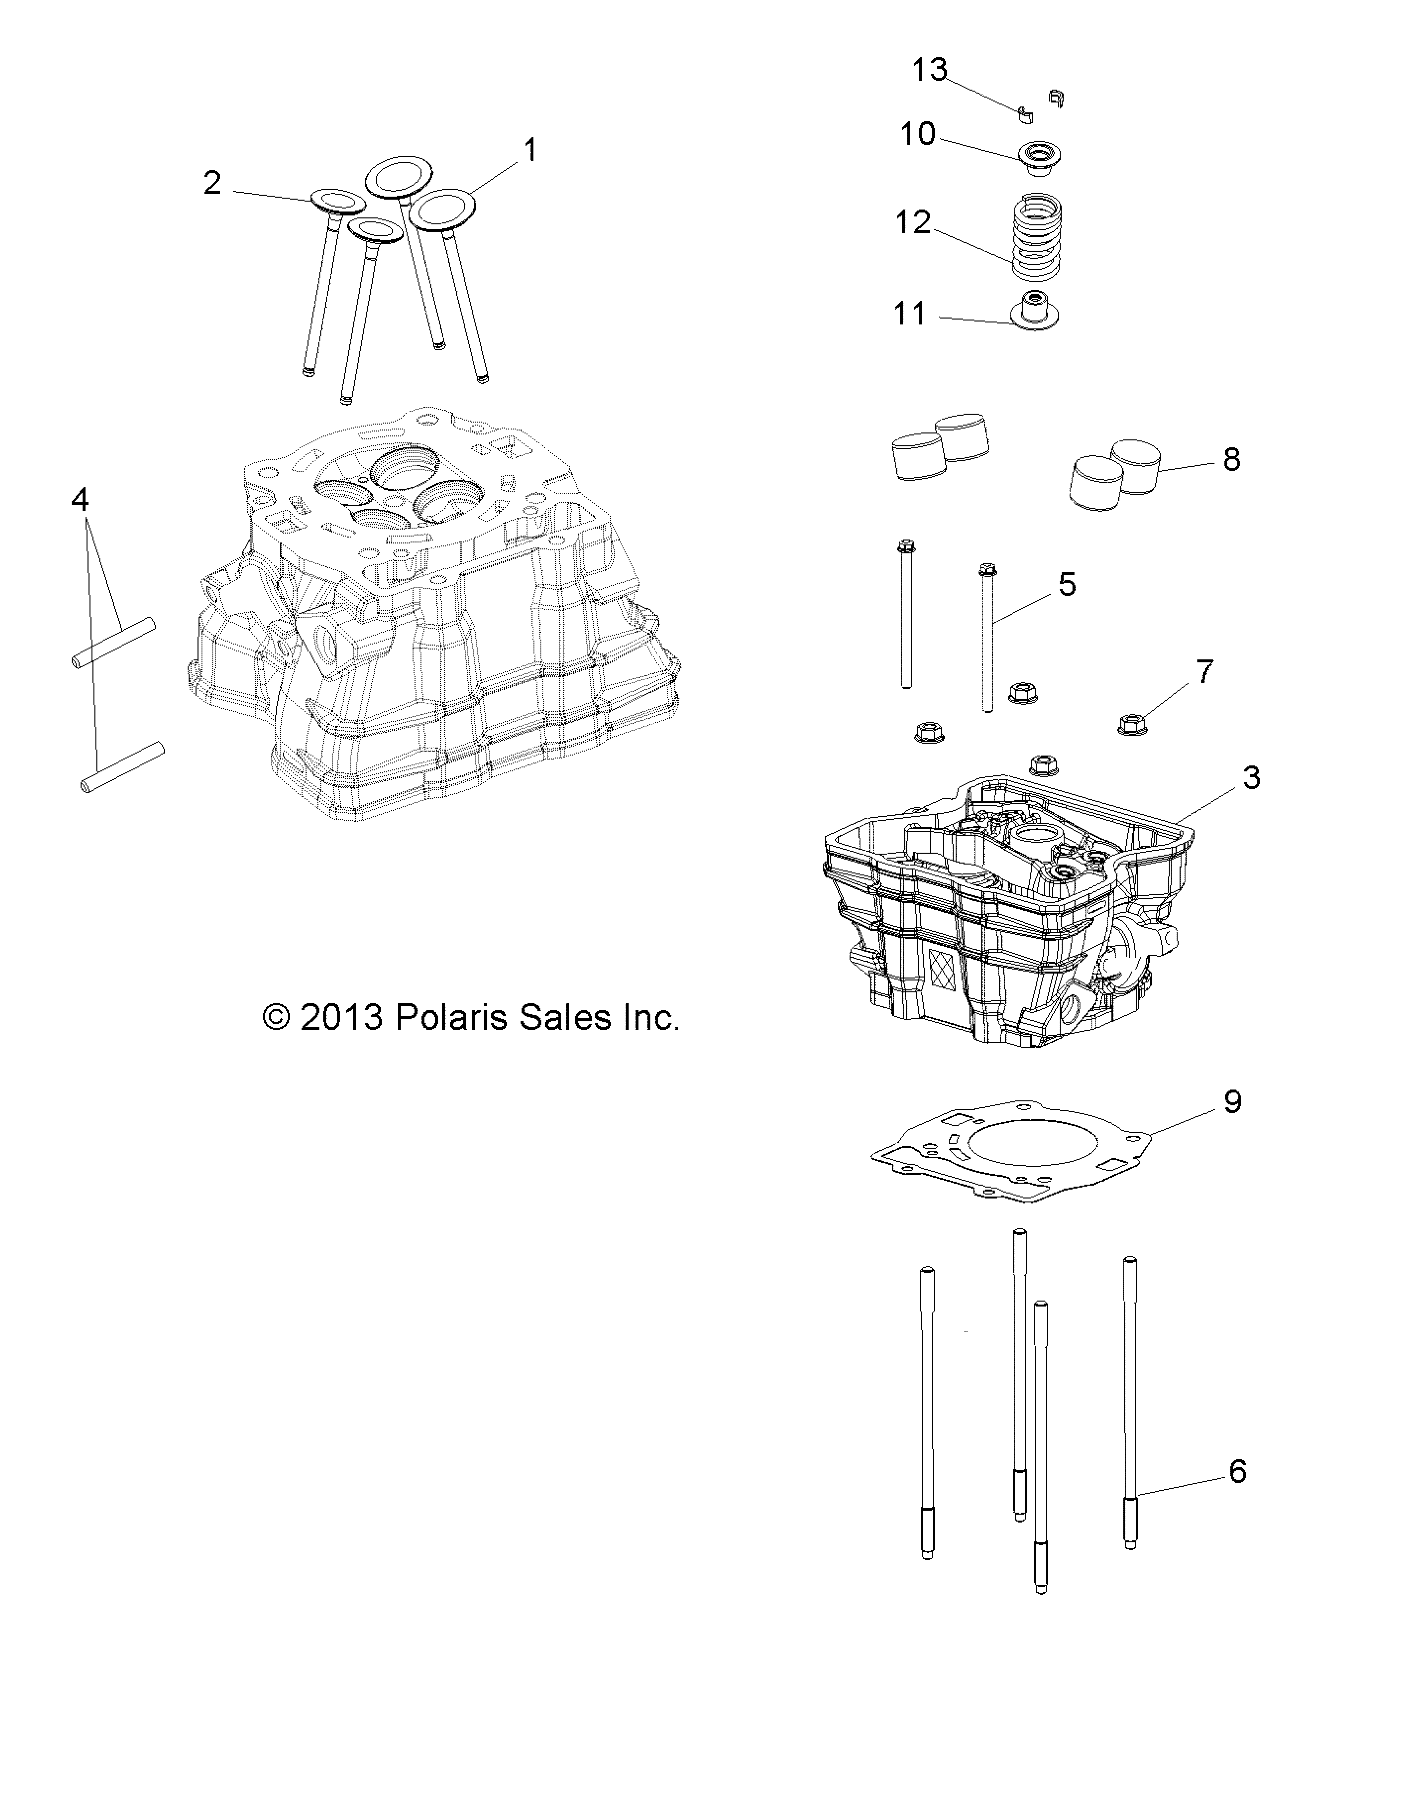 ENGINE, CYLINDER HEAD - A15SAA32EH (49ATVCYLINDERHD14SP325)